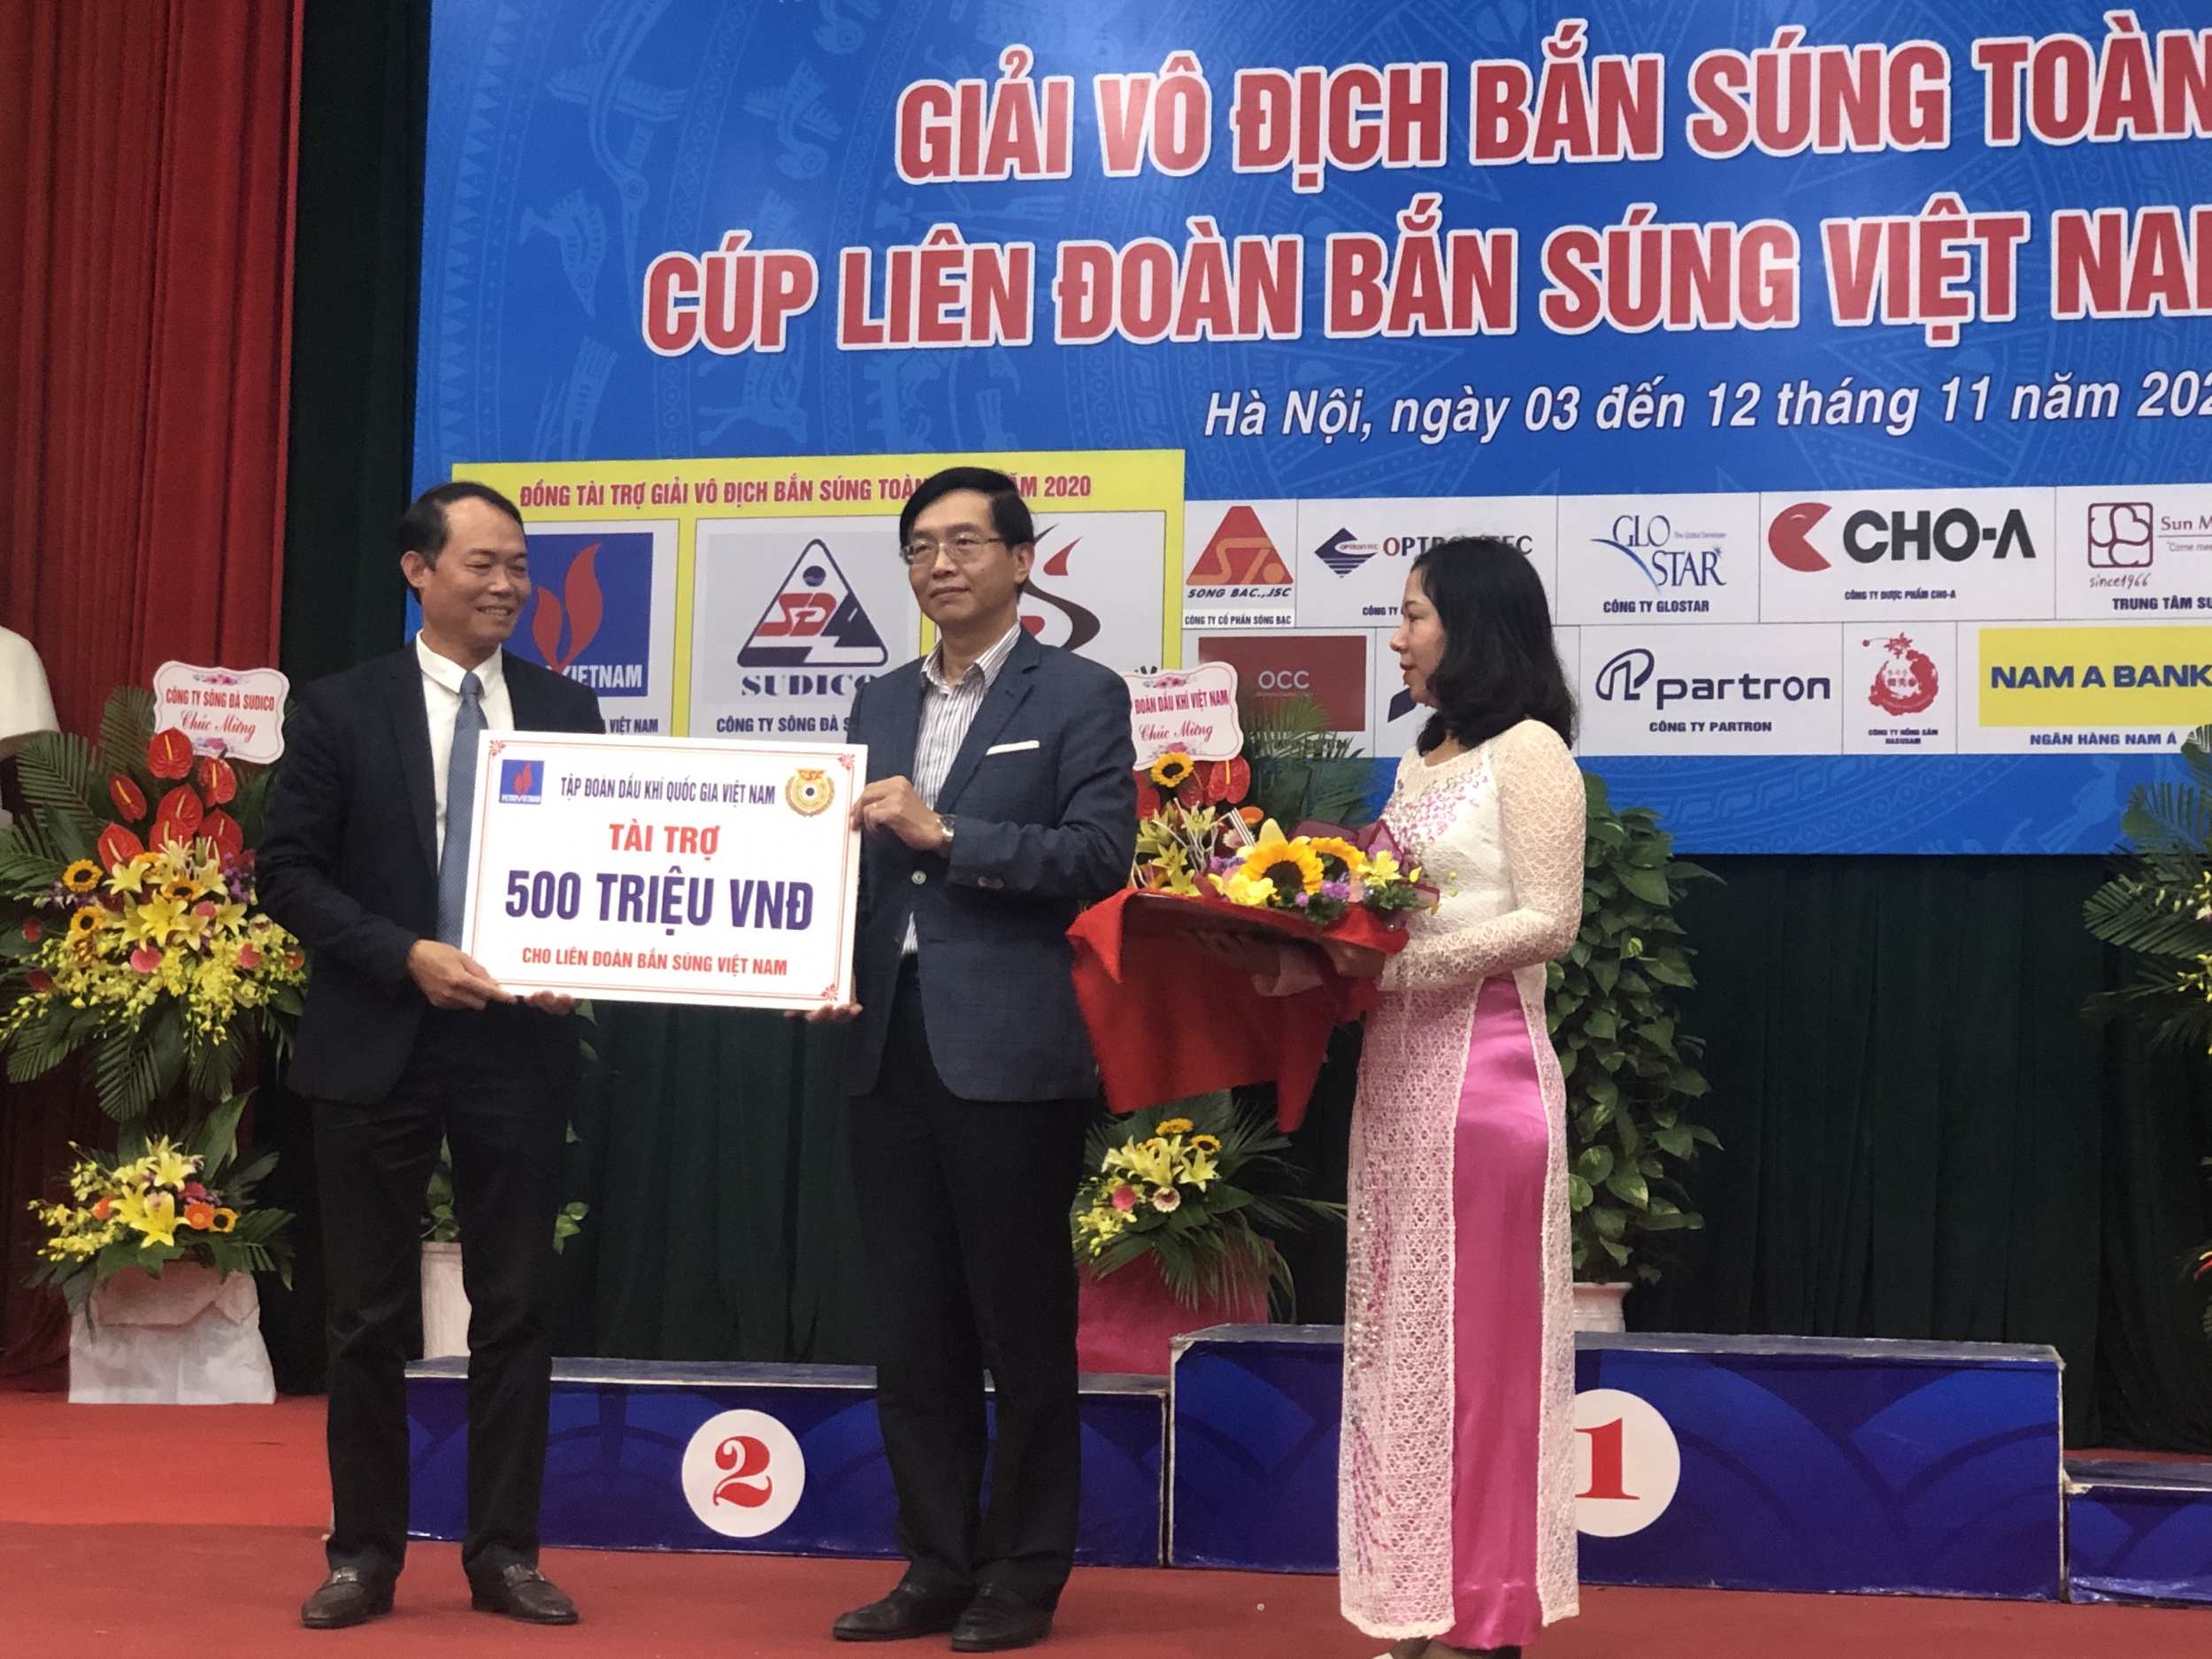 Petrovietnam đồng hành cùng Giải vô địch Bắn súng toàn quốc - Cúp Liên đoàn Bắn súng Việt Nam năm 2020